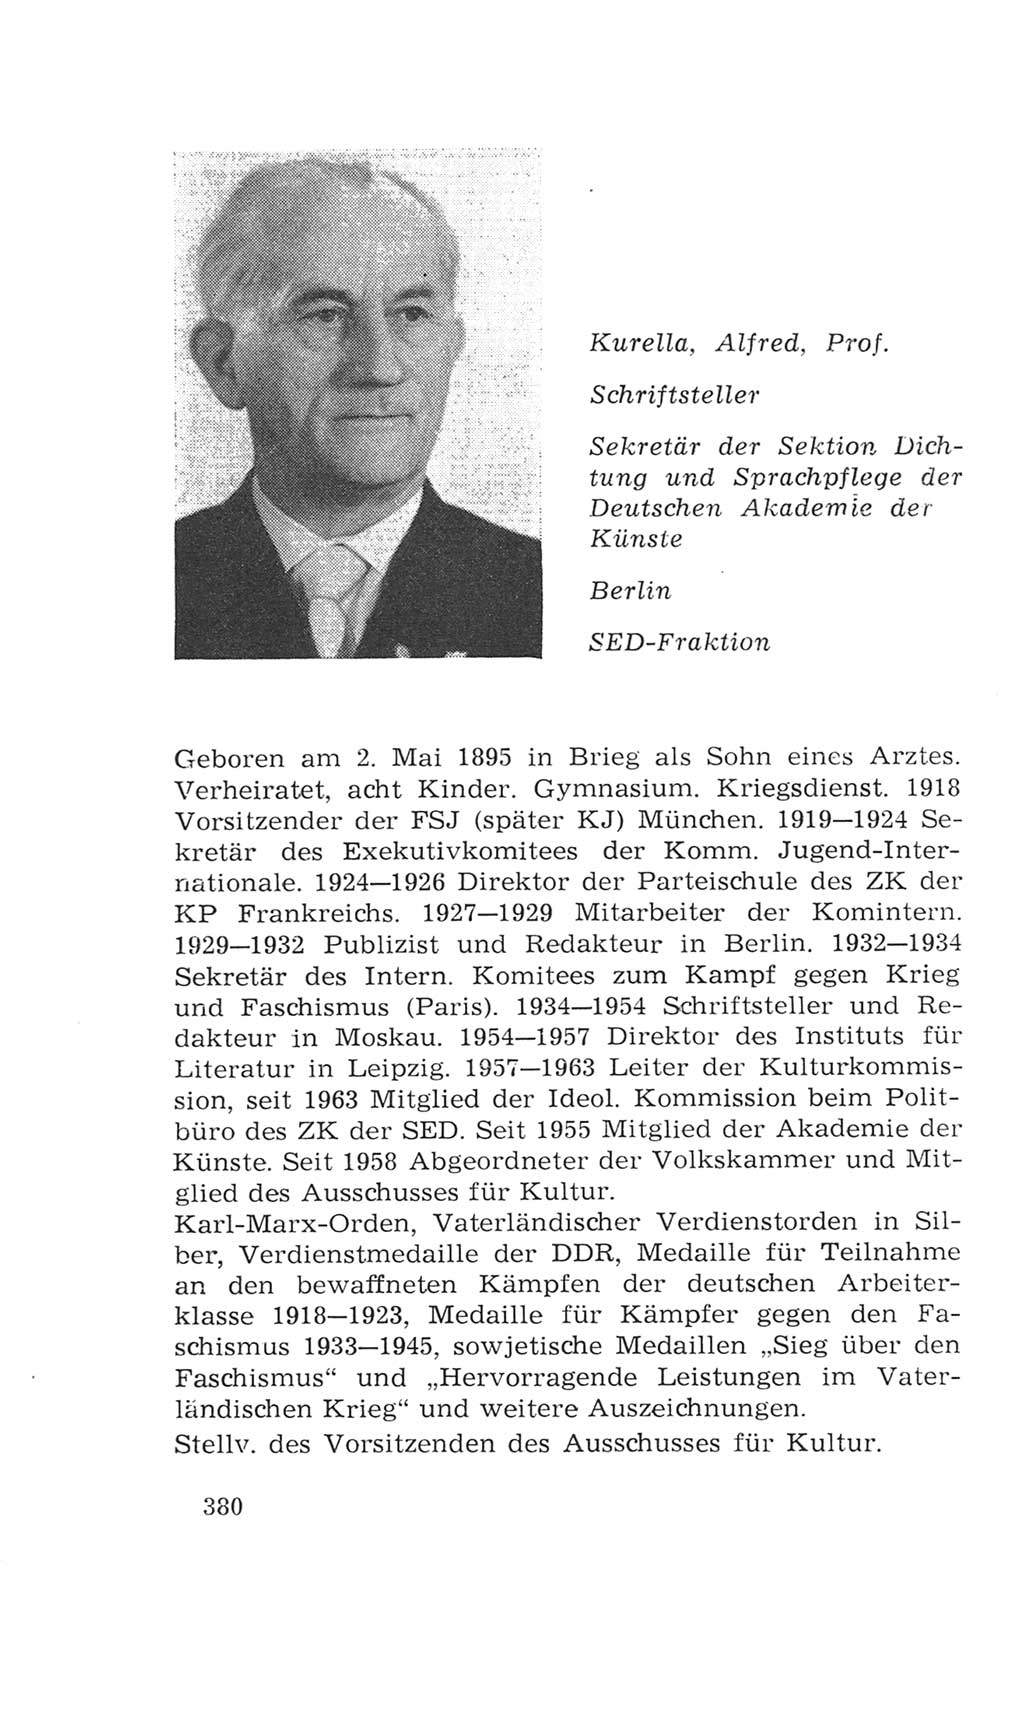 Volkskammer (VK) der Deutschen Demokratischen Republik (DDR), 4. Wahlperiode 1963-1967, Seite 380 (VK. DDR 4. WP. 1963-1967, S. 380)